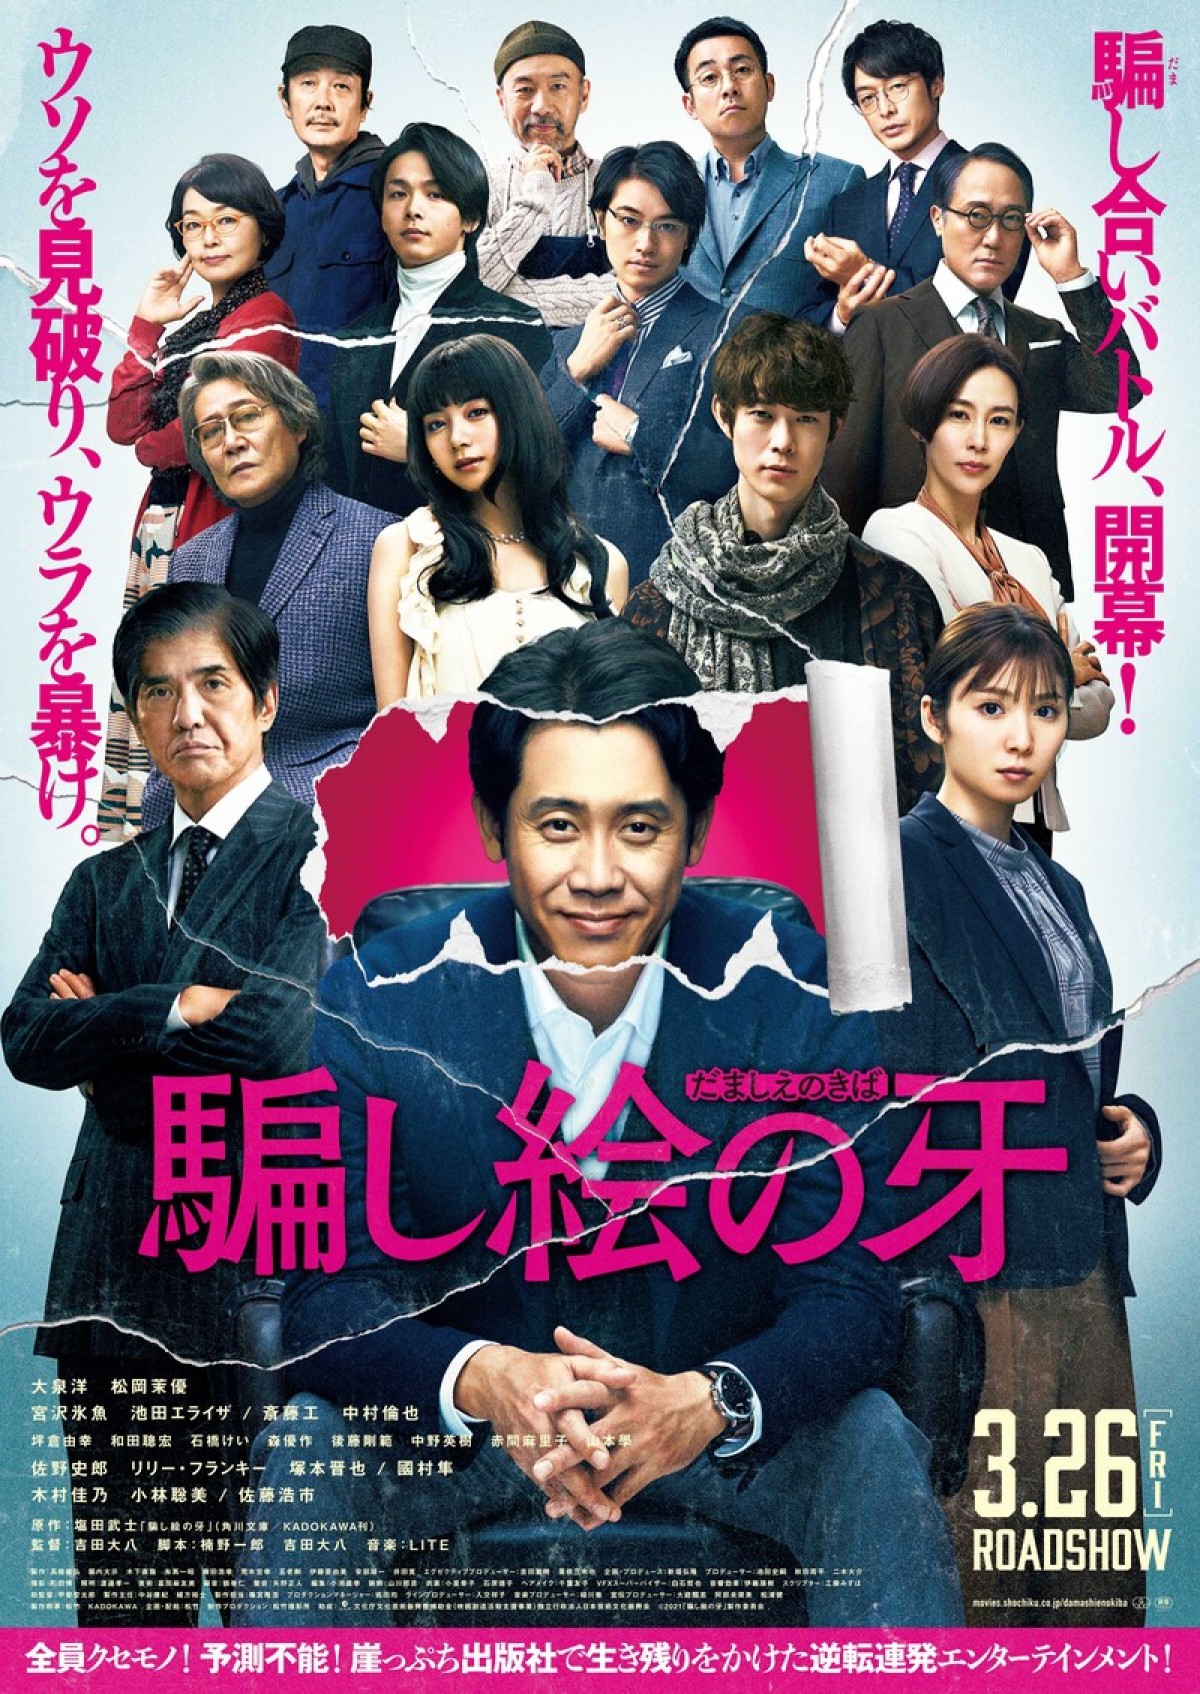 【映画ランキング】『シン・エヴァ』V3＆興収60億円突破　『モンスターハンター』は2位発進